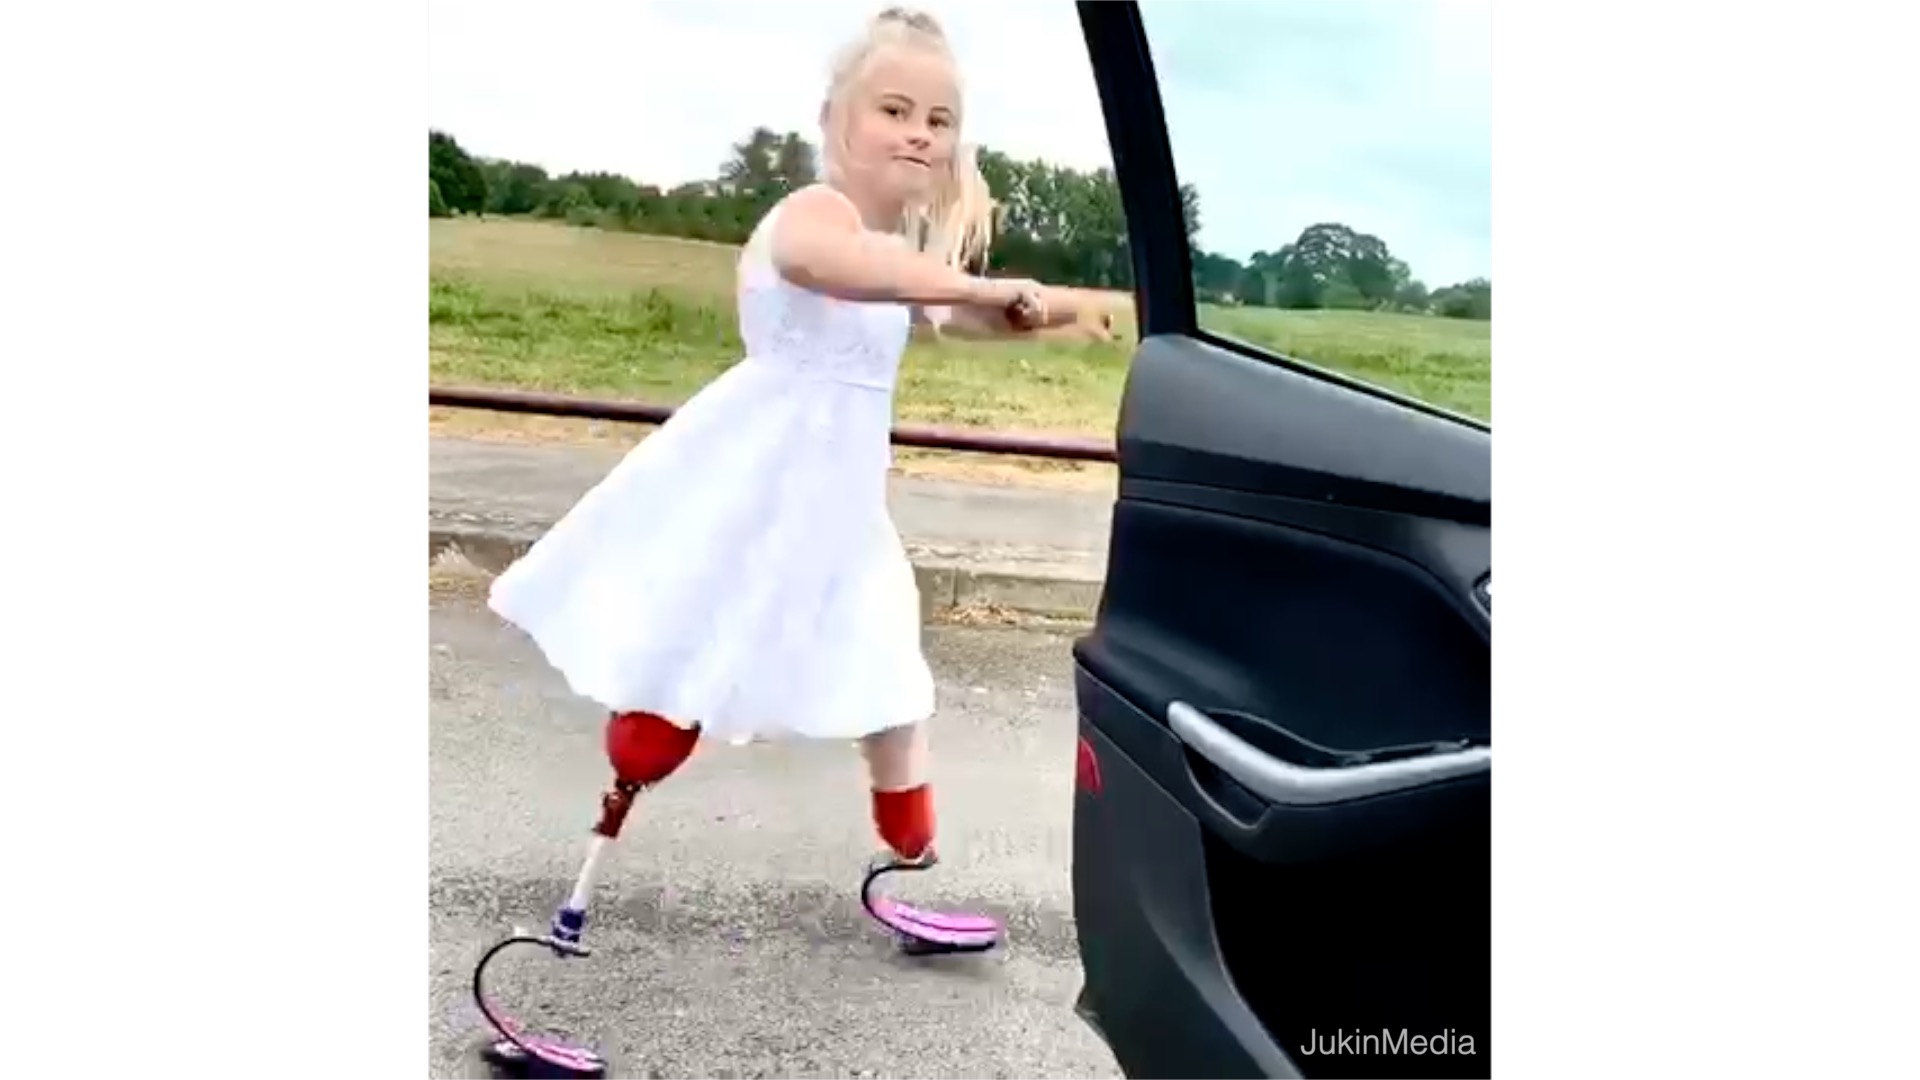 Girl With Prosthetic Legs Dances Alongside Moving Car		